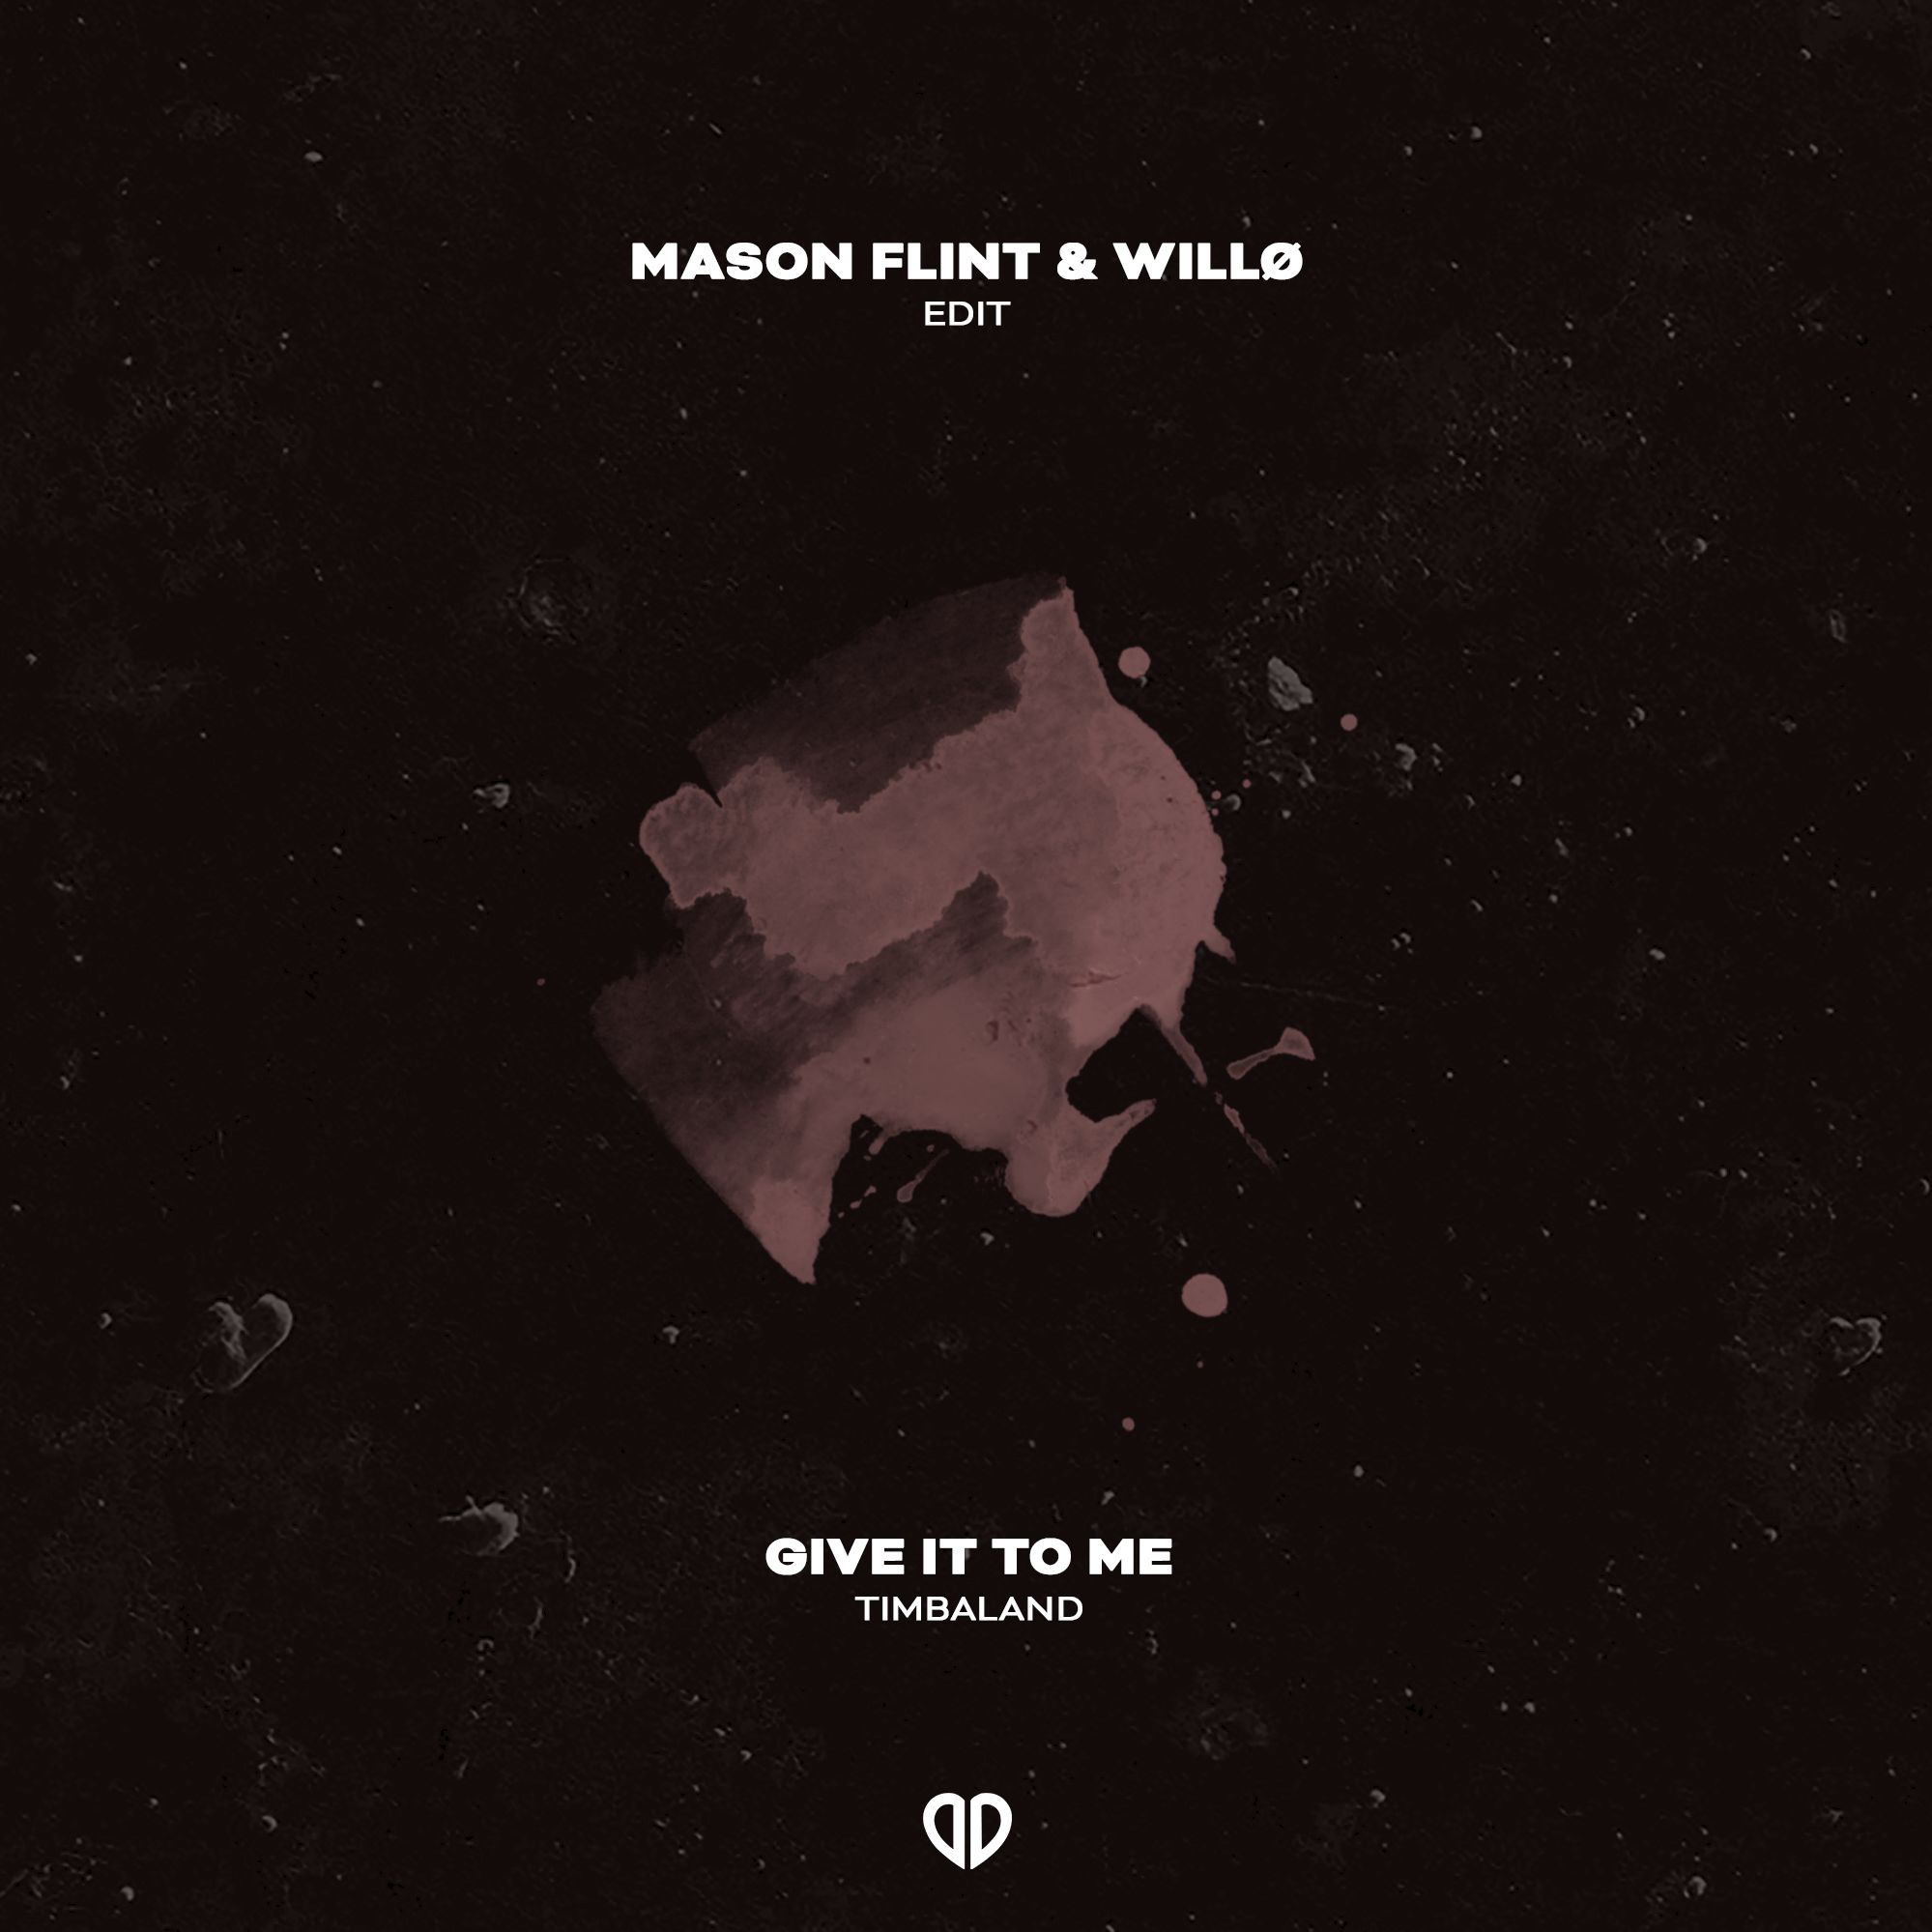 ဒေါင်းလုပ် Timbaland - Give It To Me (Mason Flint & Willo Edit) [DropUnited Exclusive]